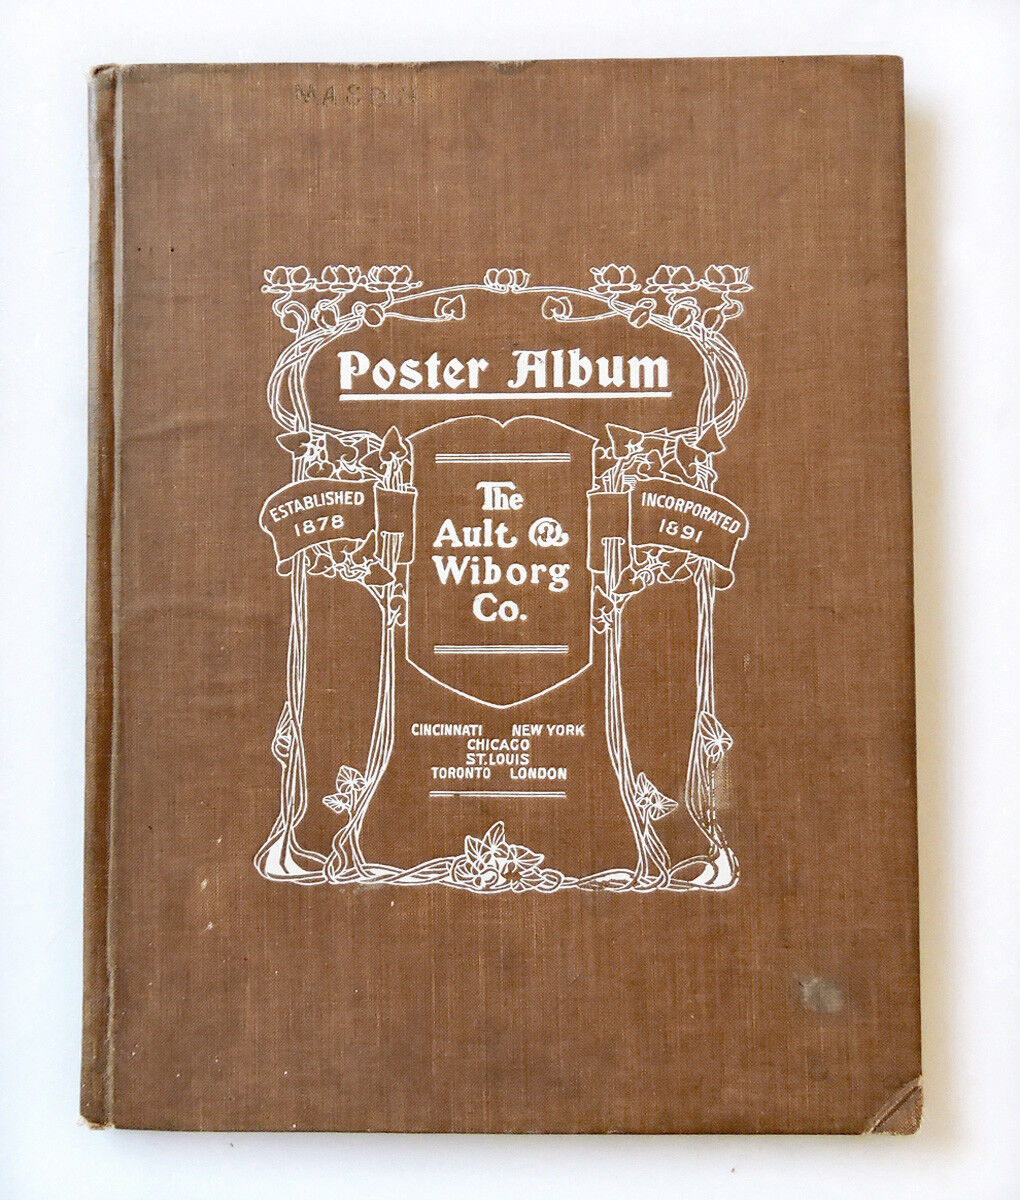 THE AULT & WIBORG POSTER ALBUM (1902) - SUPER-RARE